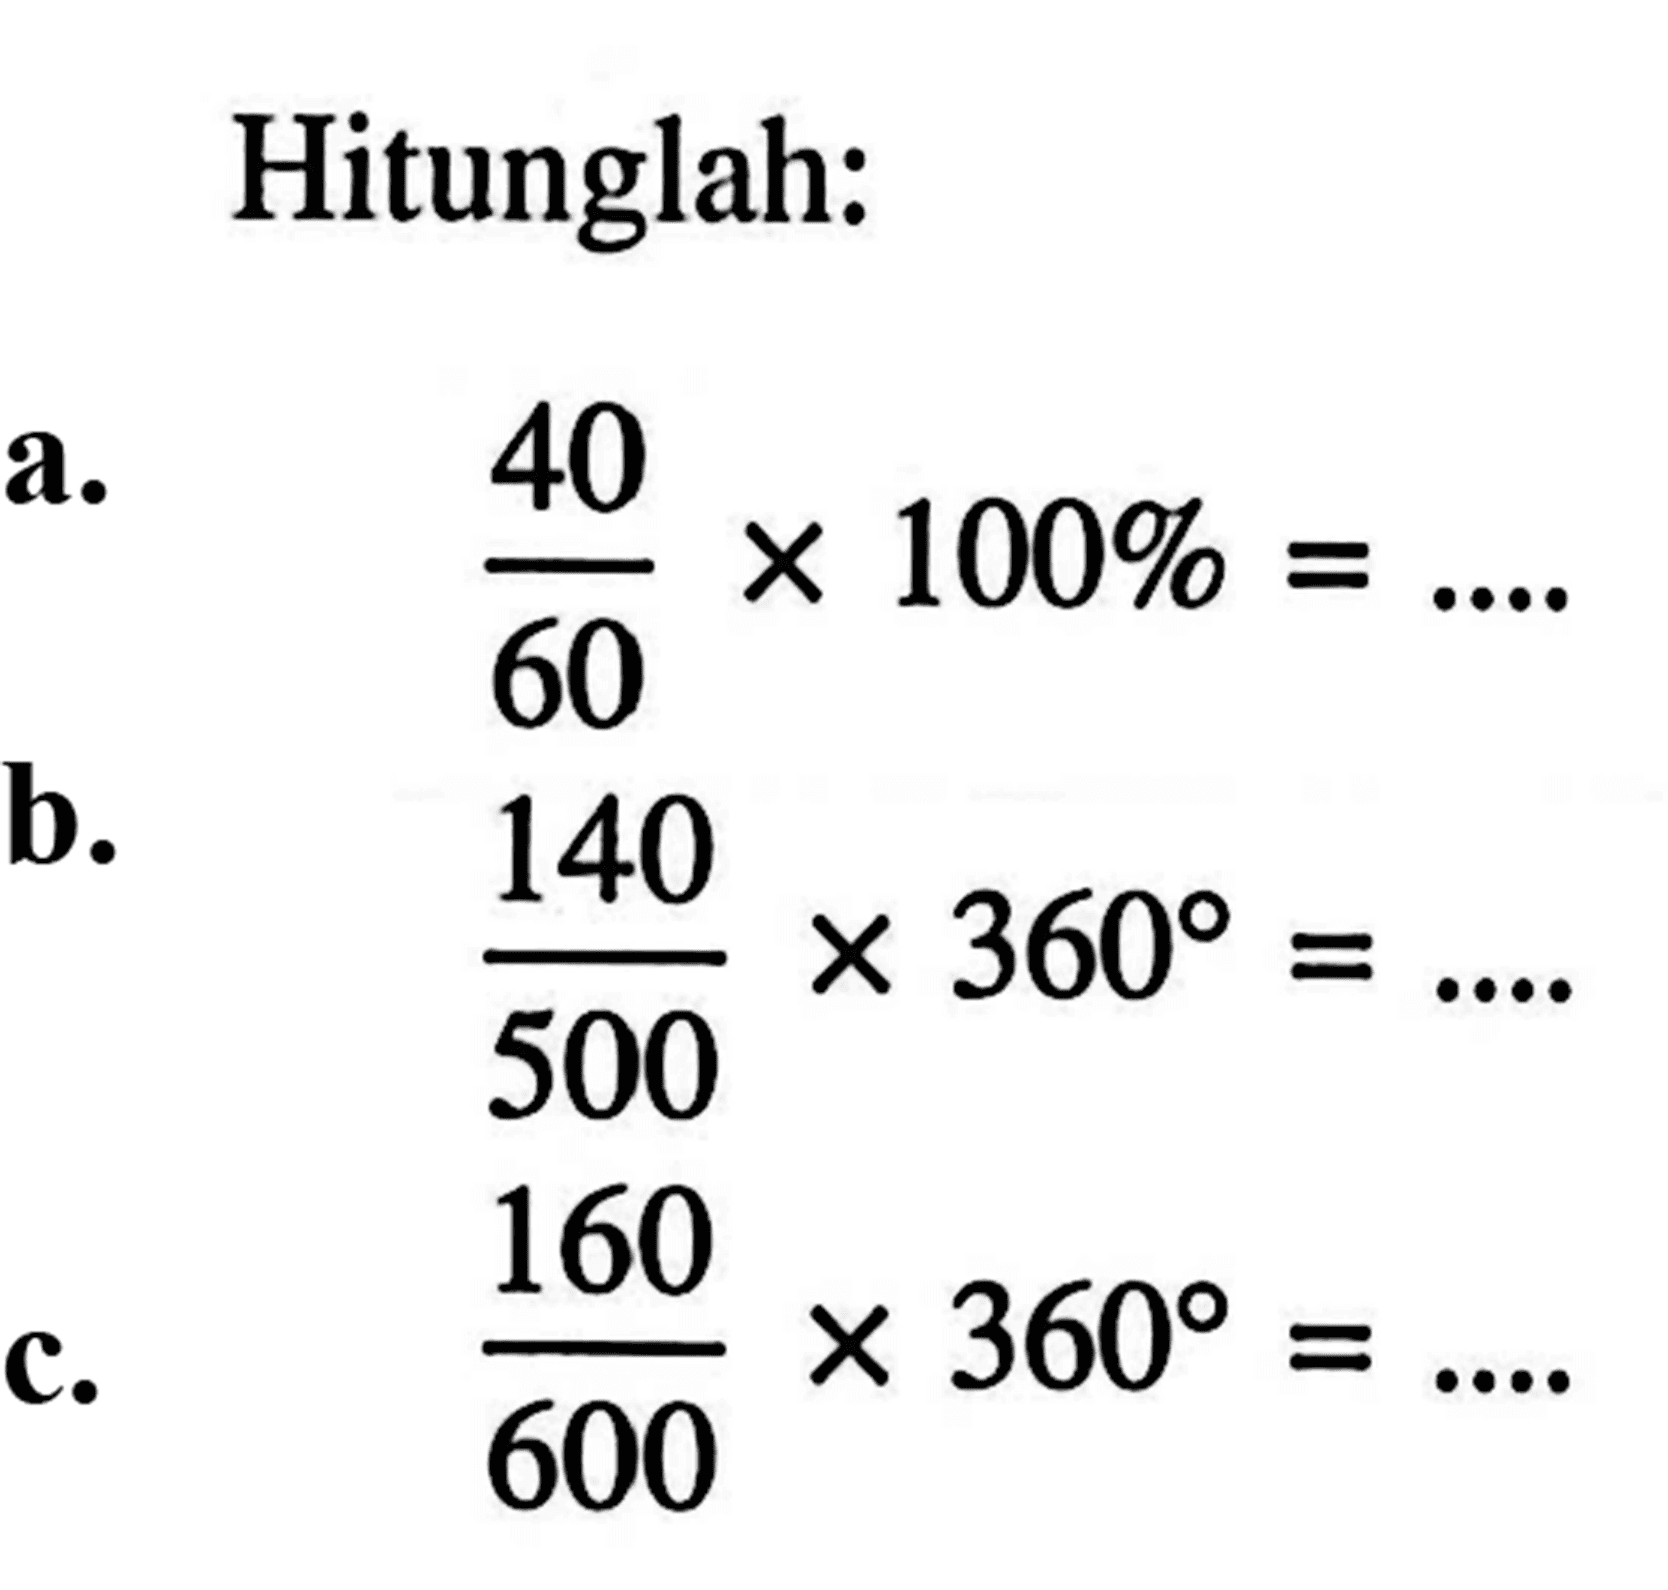 Hitunglah: a. 40/60 X 100% = b. 140/500 X 360 = 500 c. 160/600 X 360